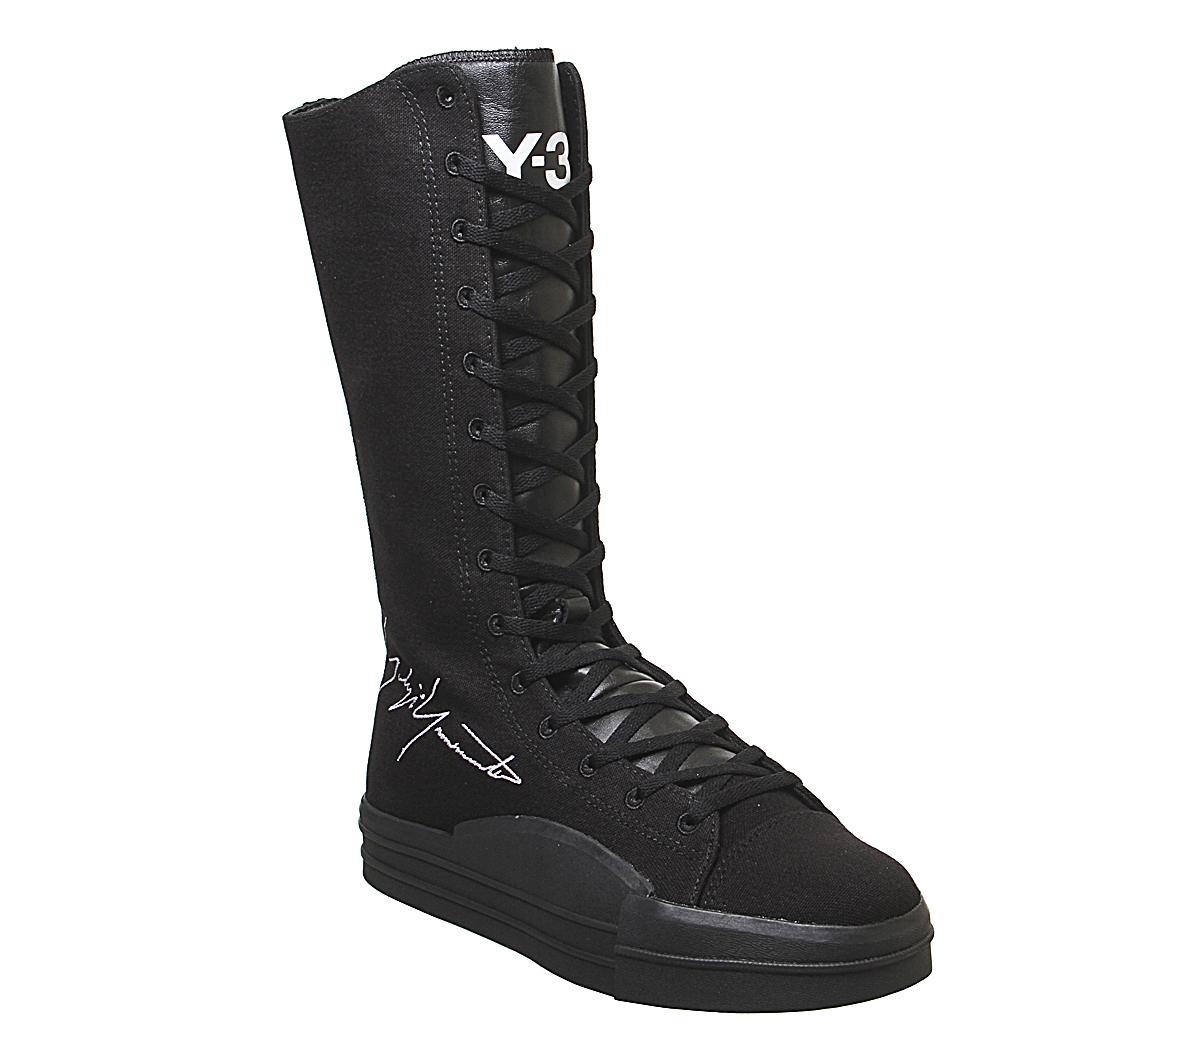 y3 boots black